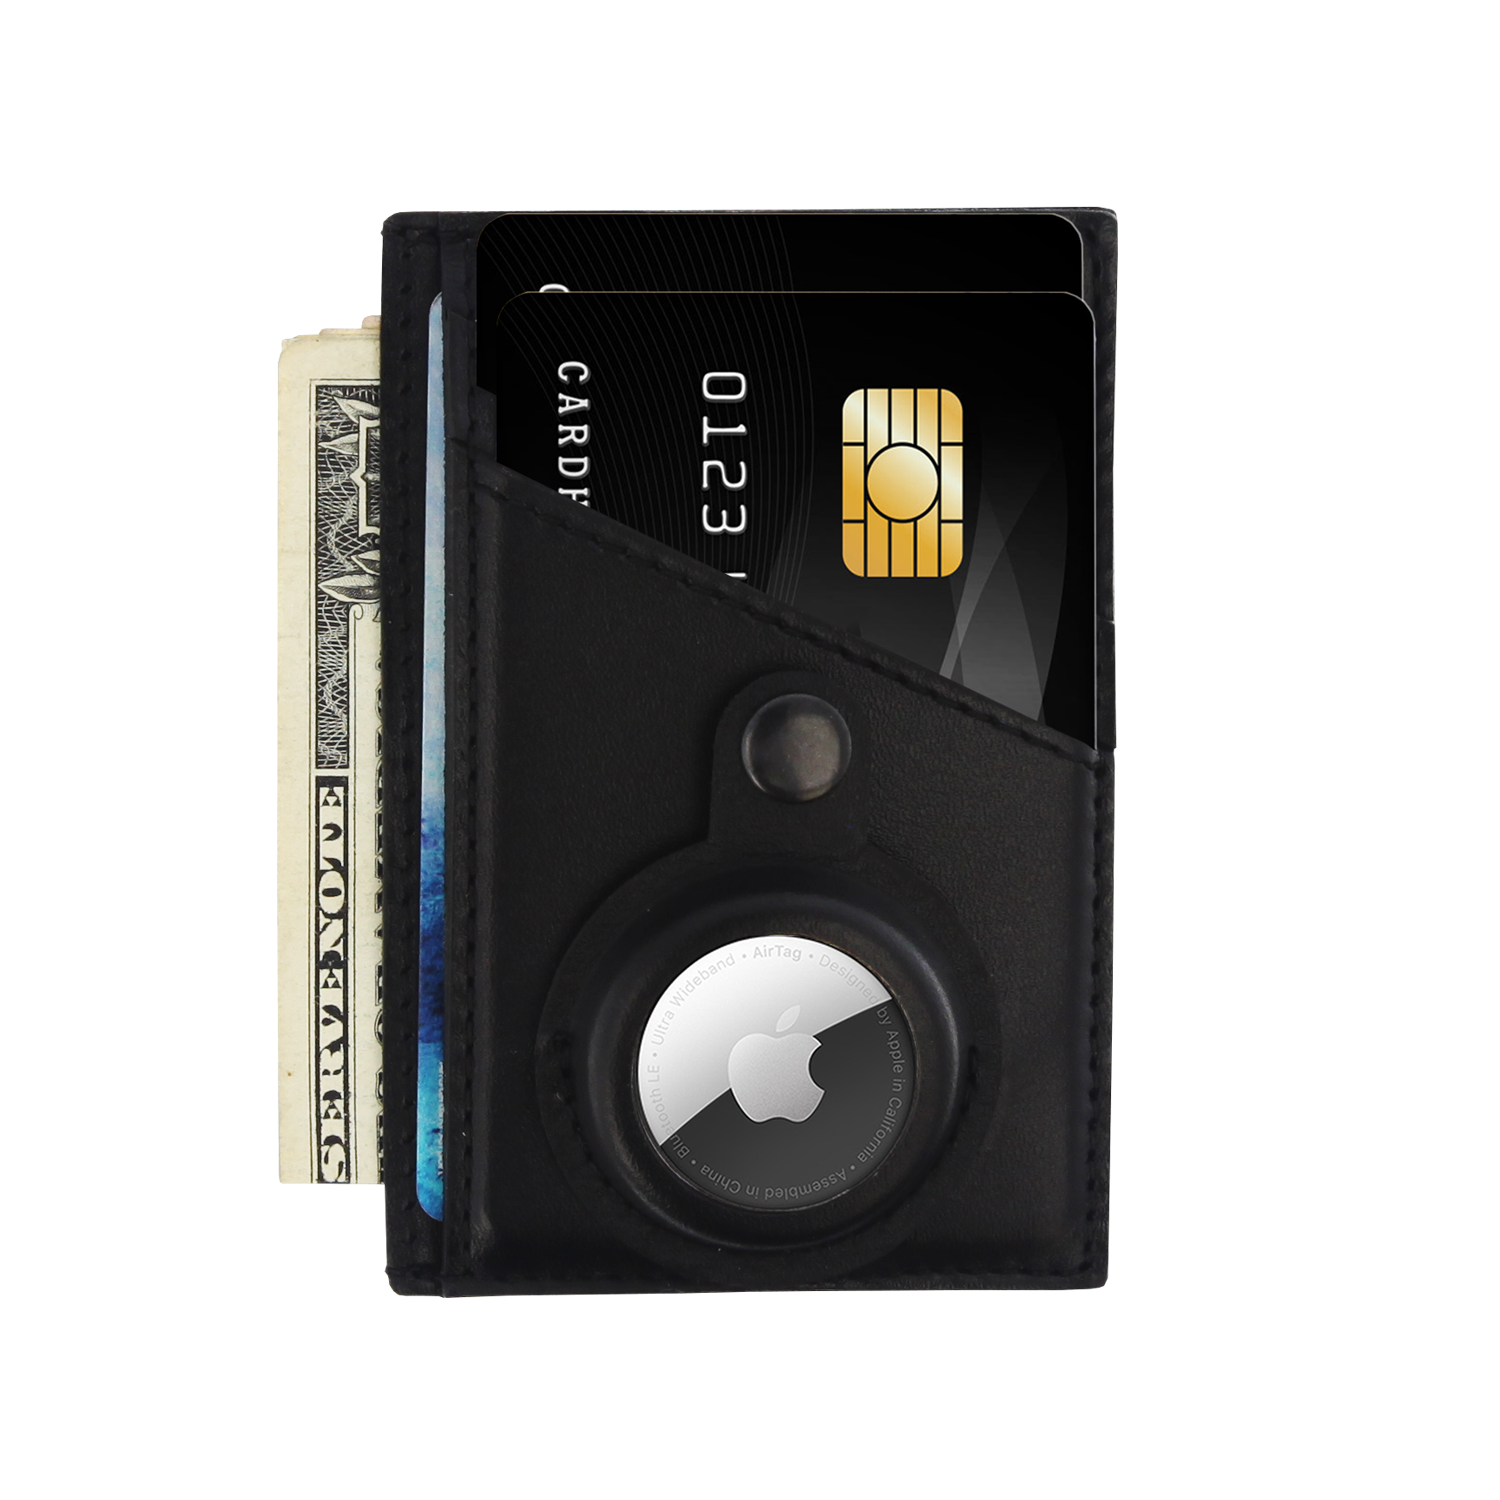 Card Wallet AirTag Black